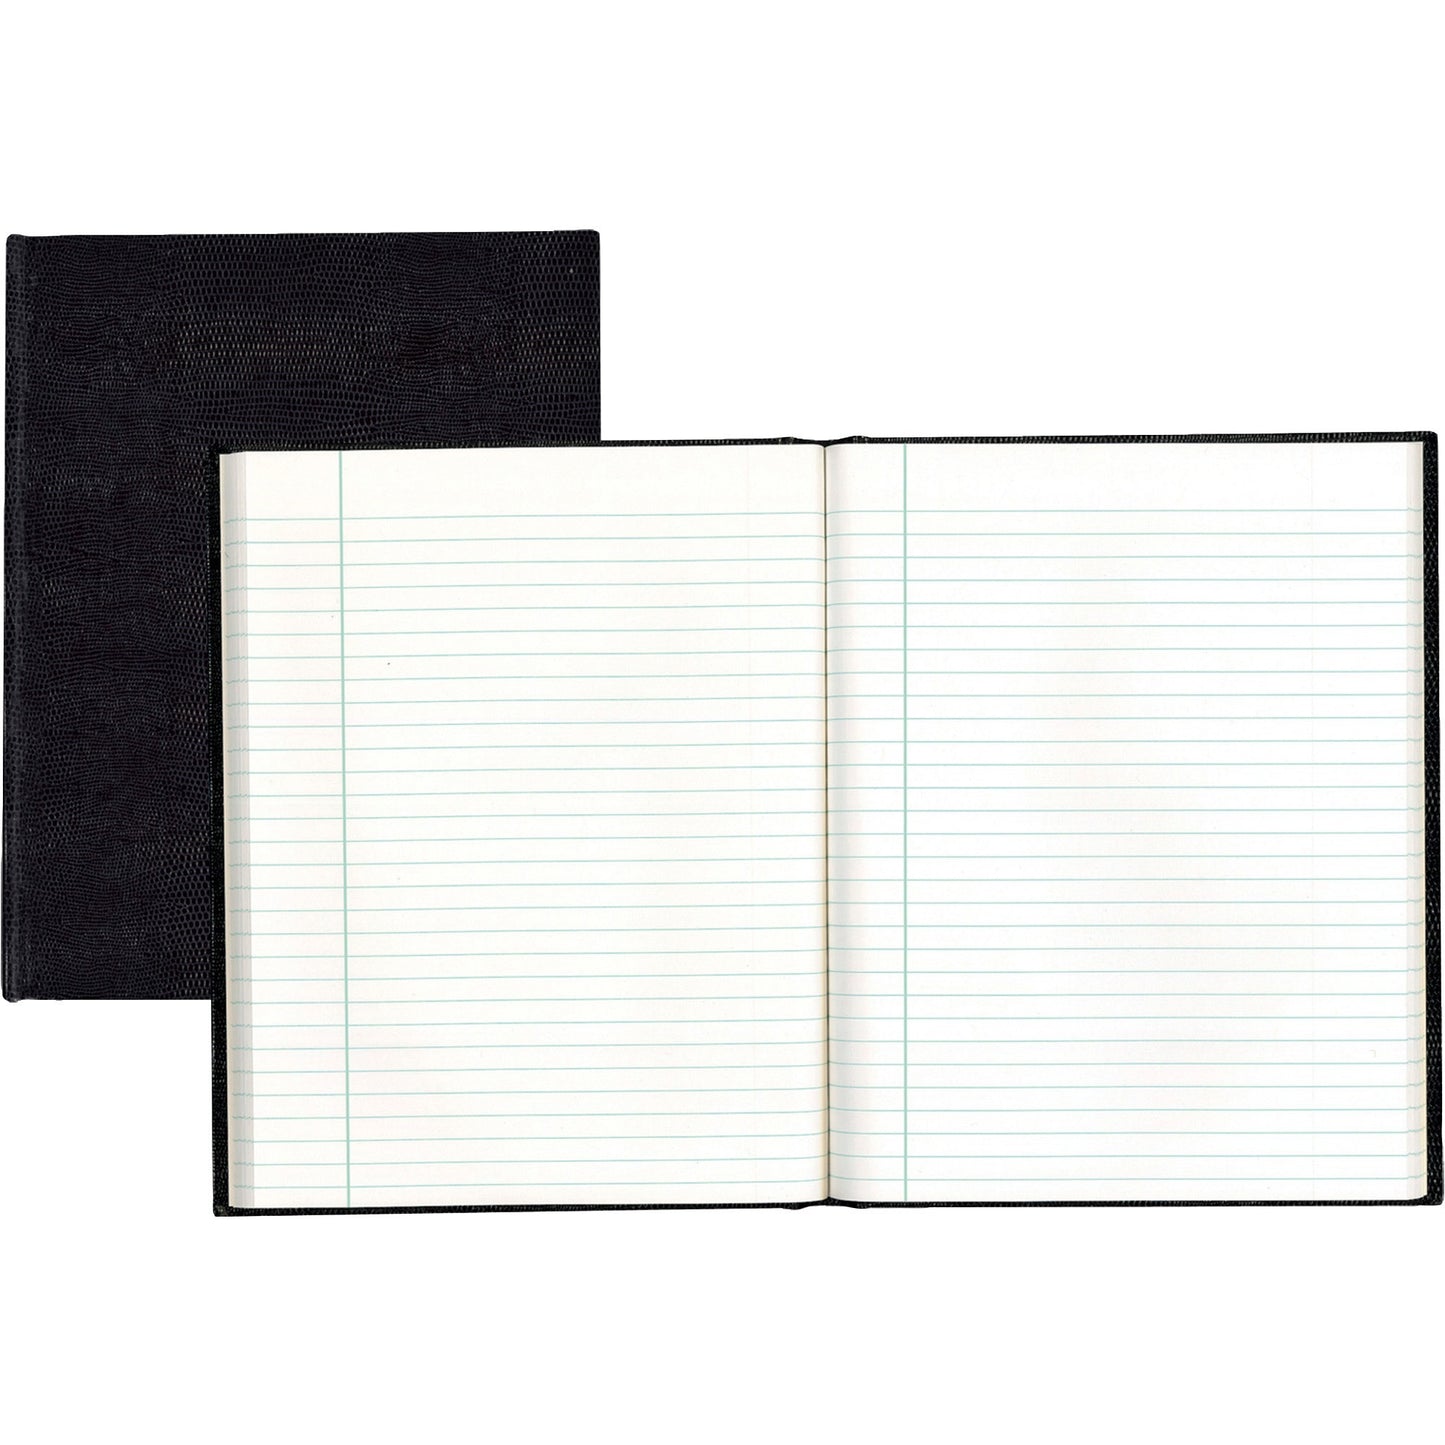 Blueline Hardbound Executive Notebooks